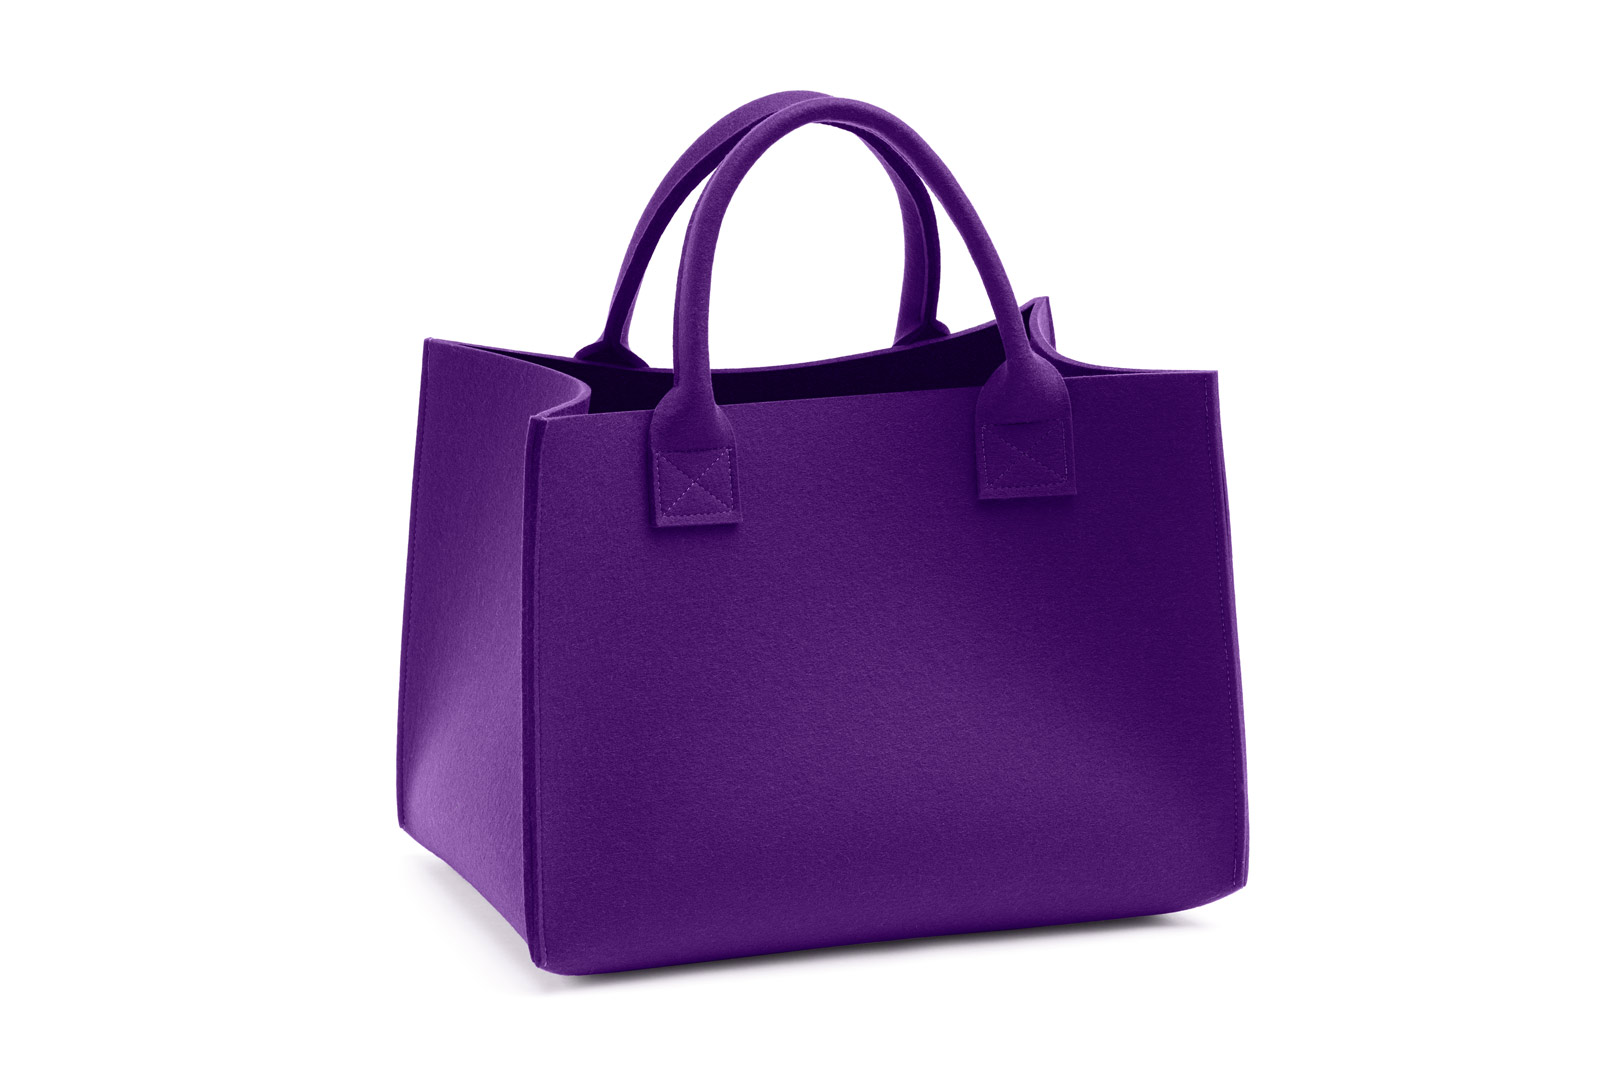 HEY-Sign Tasche Bigi in der Farbe "Violett"